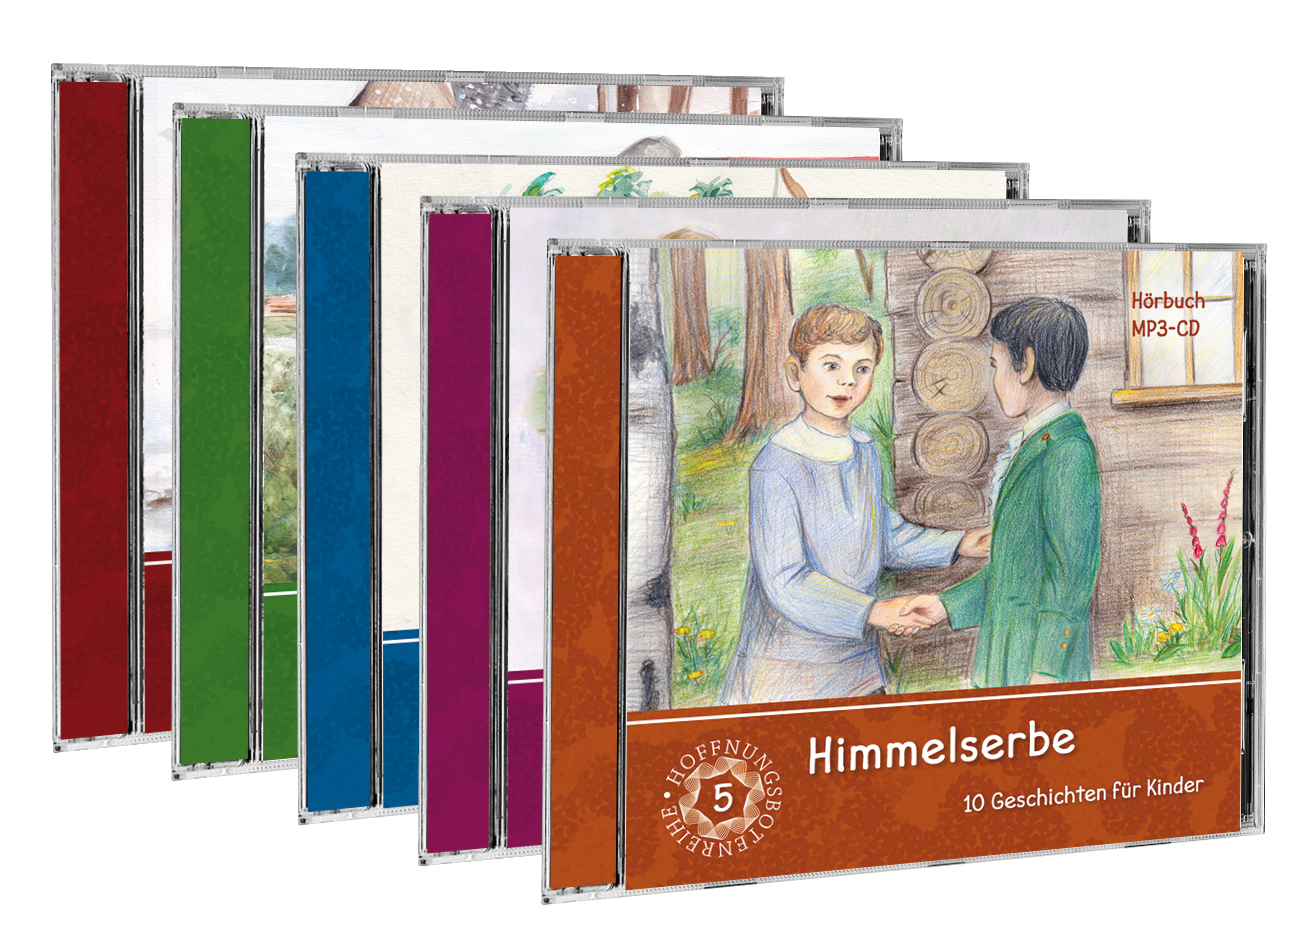 Himmelserbe - Hörbuch-Set (5 CDs)